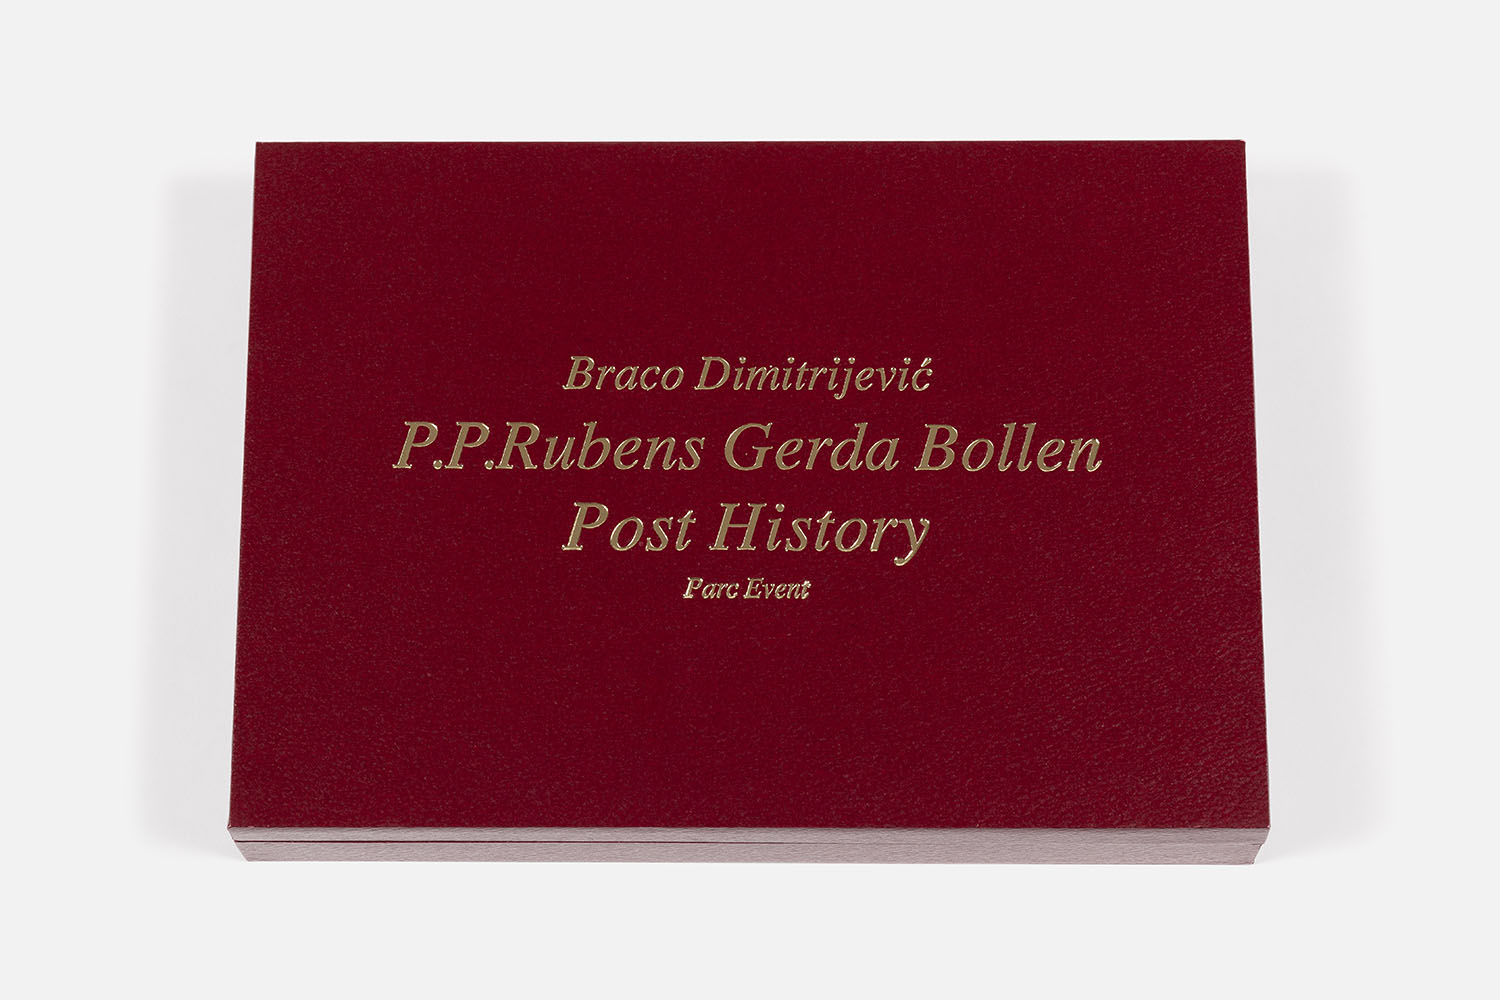 Parc Event / P.P. Rubens - Gerda Bollen, 1992 - Vue suppl&eacute;mentaire